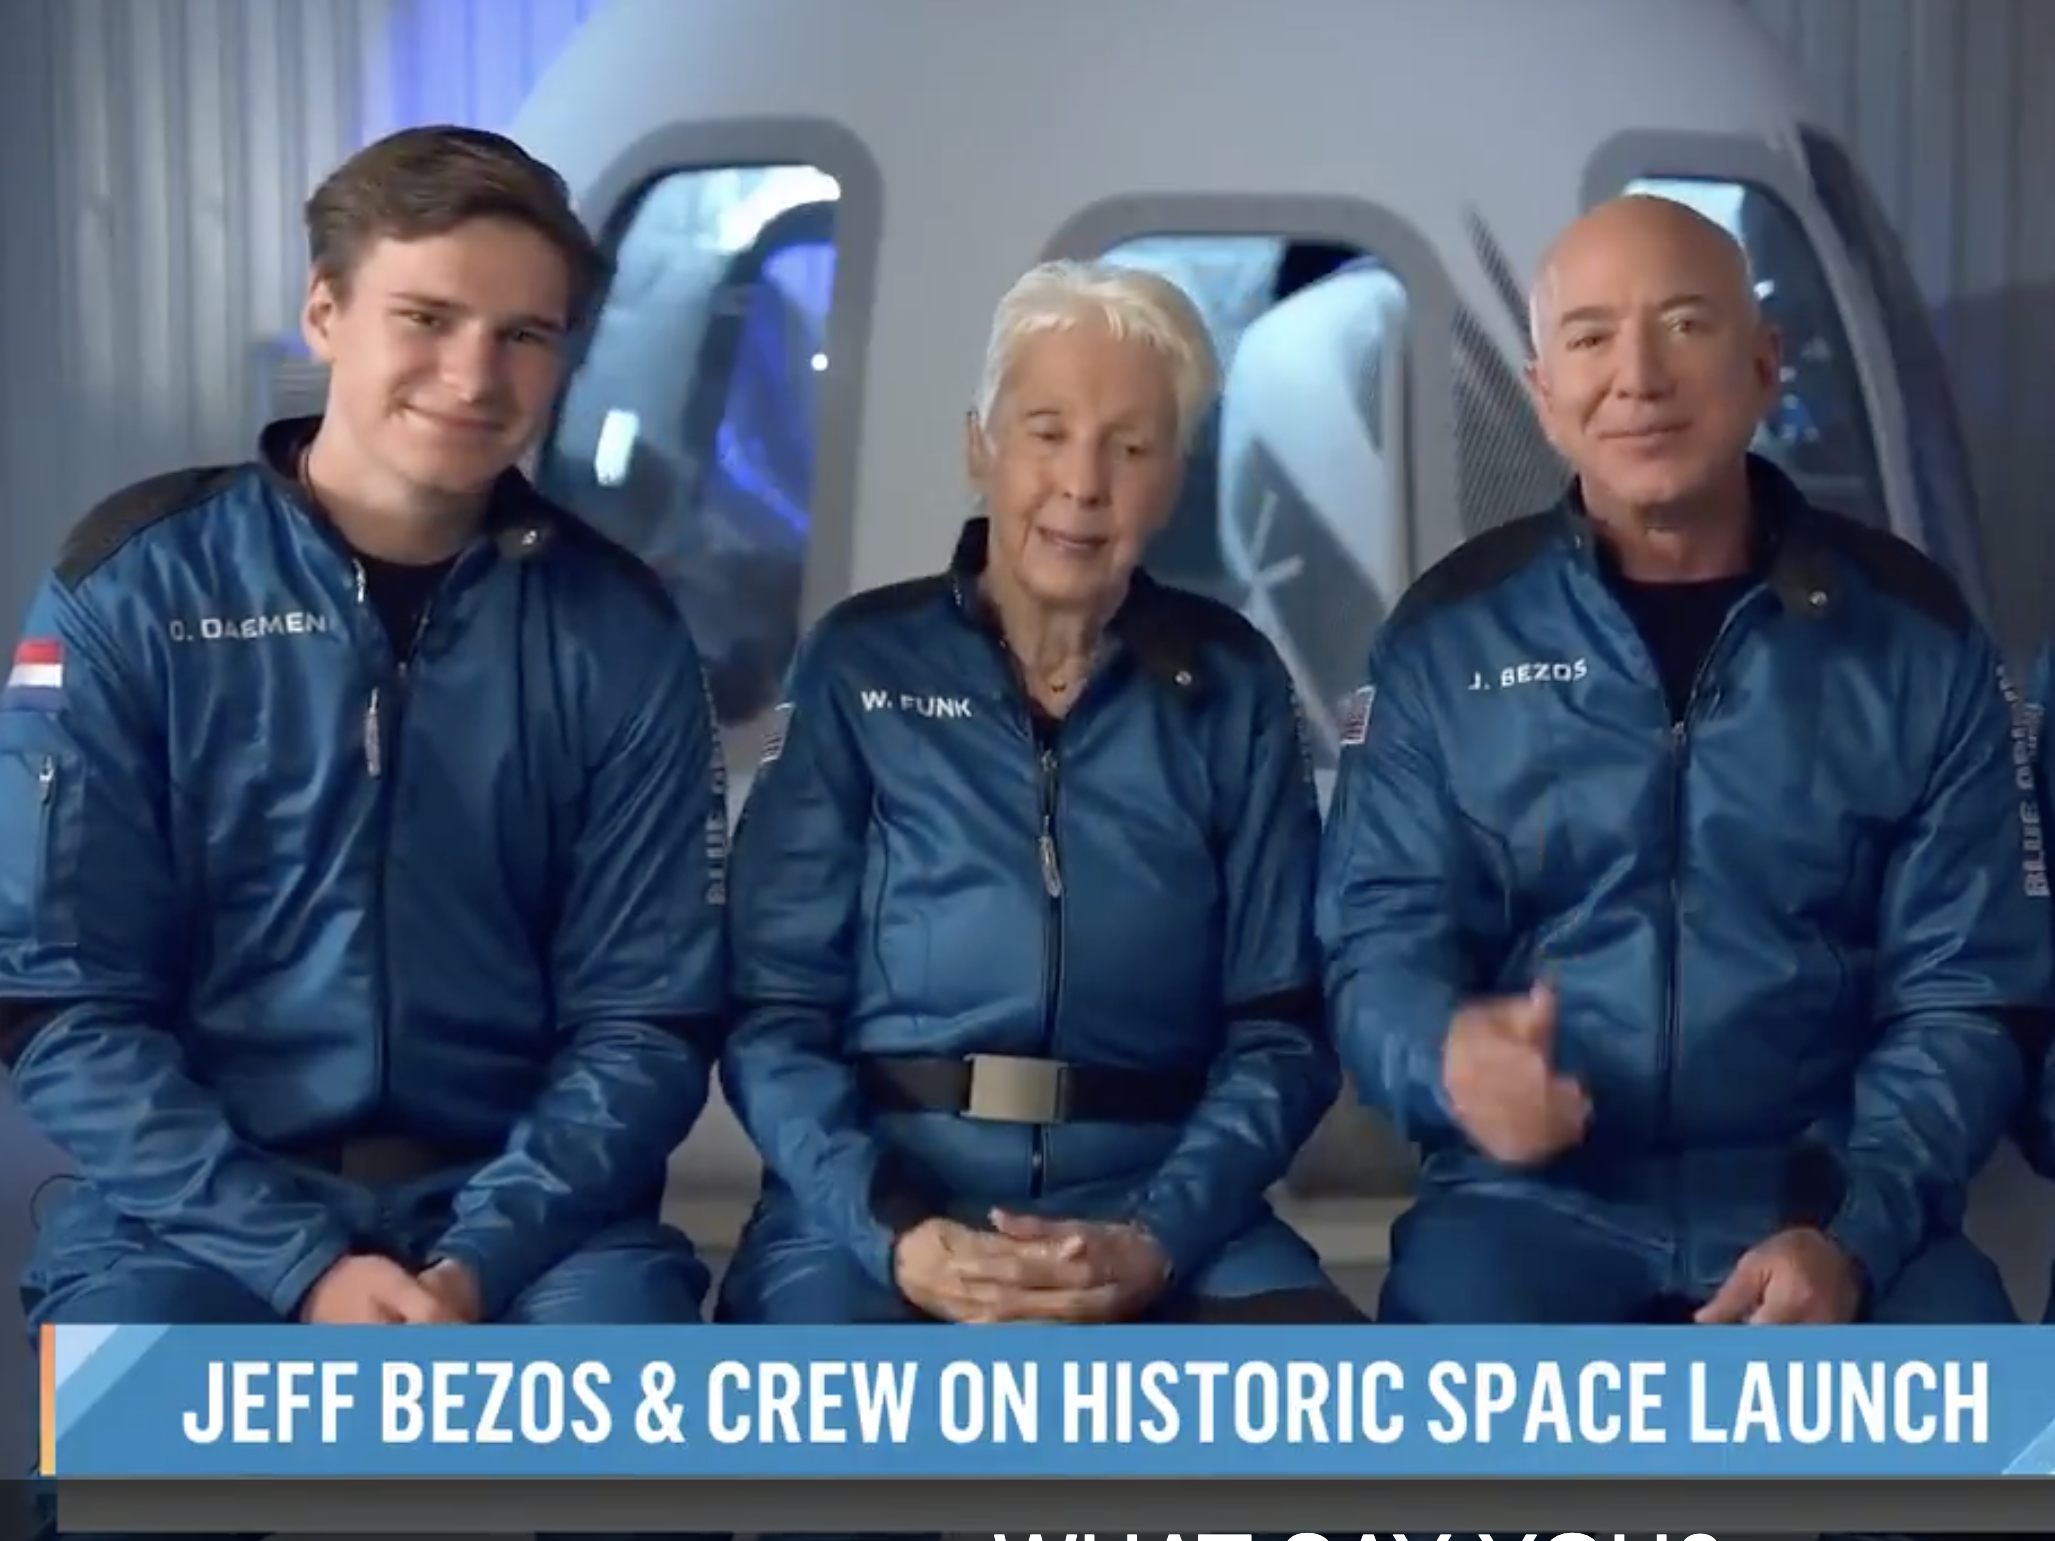 Oliver Daeman, Marty Funk, Jeff Bezos, and Mark Bezos